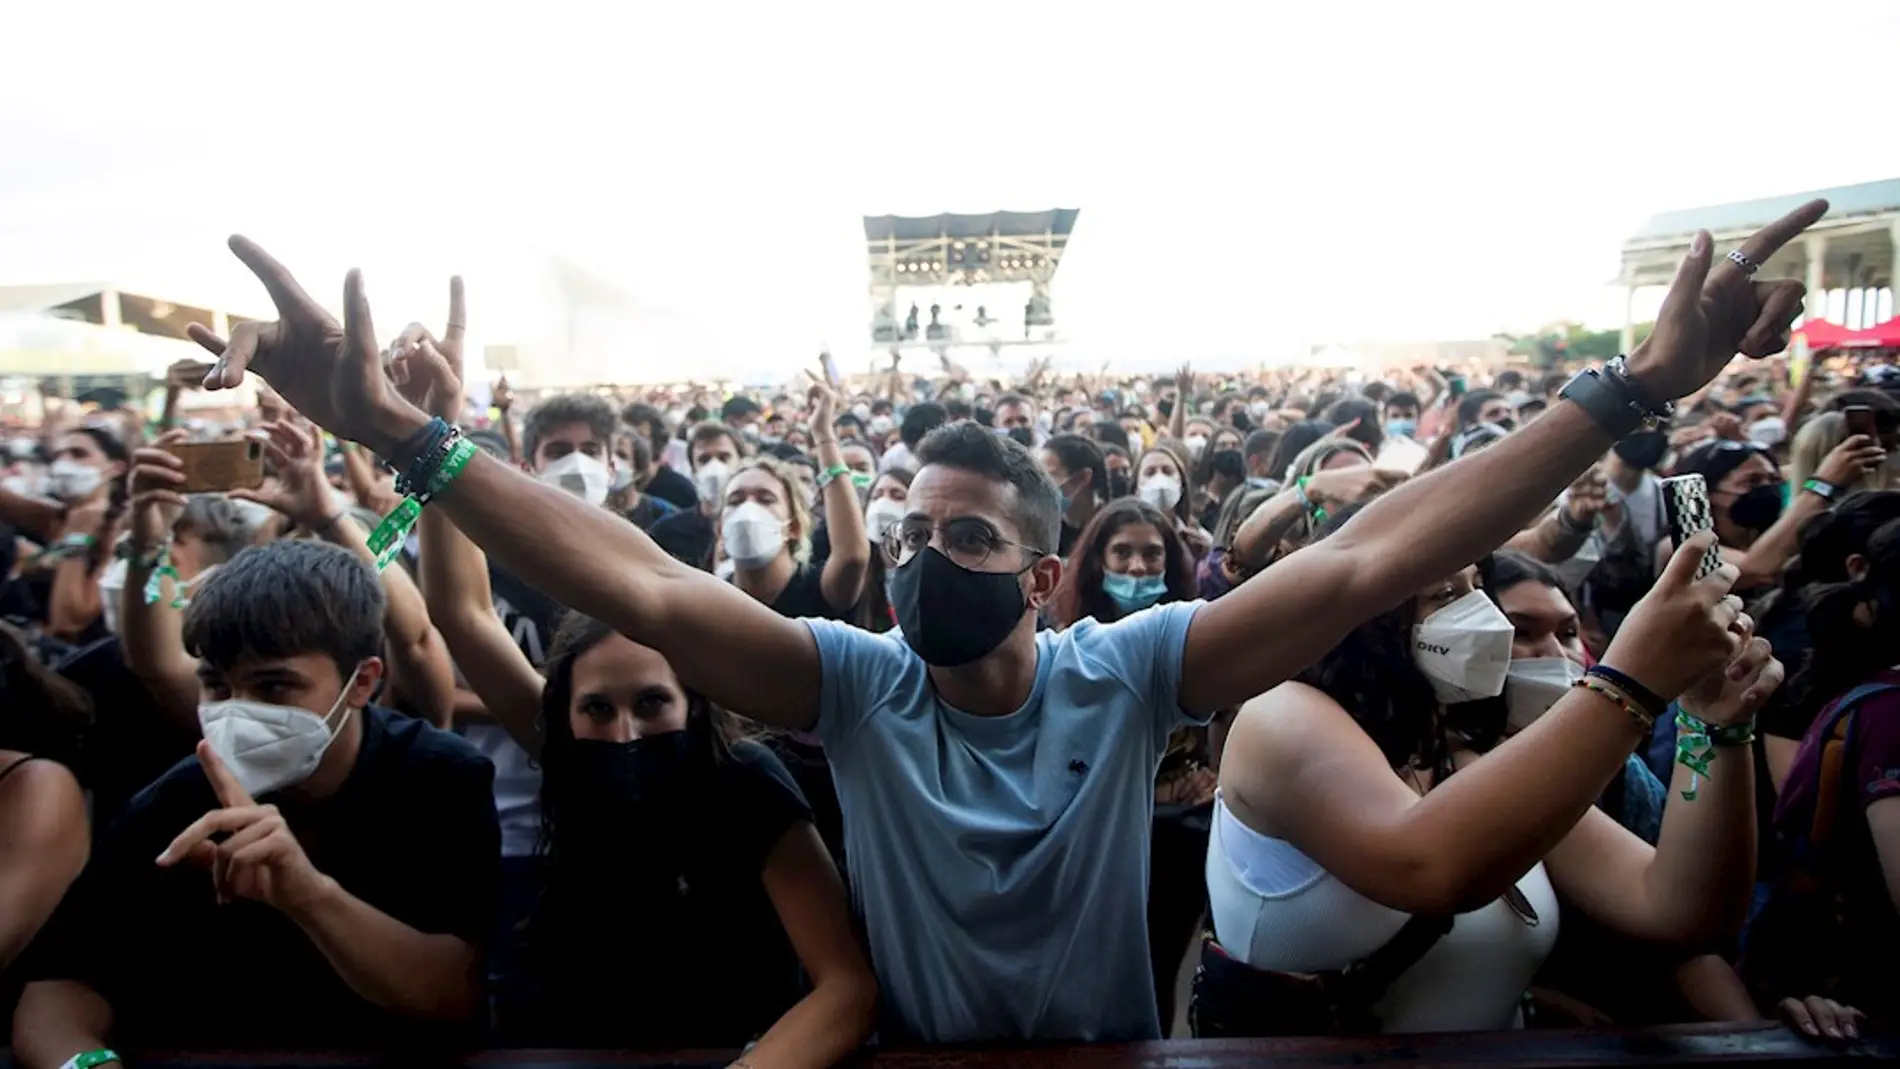 Miles de jóvenes disfrutan este jueves en el festival Cruïlla de Barcelona